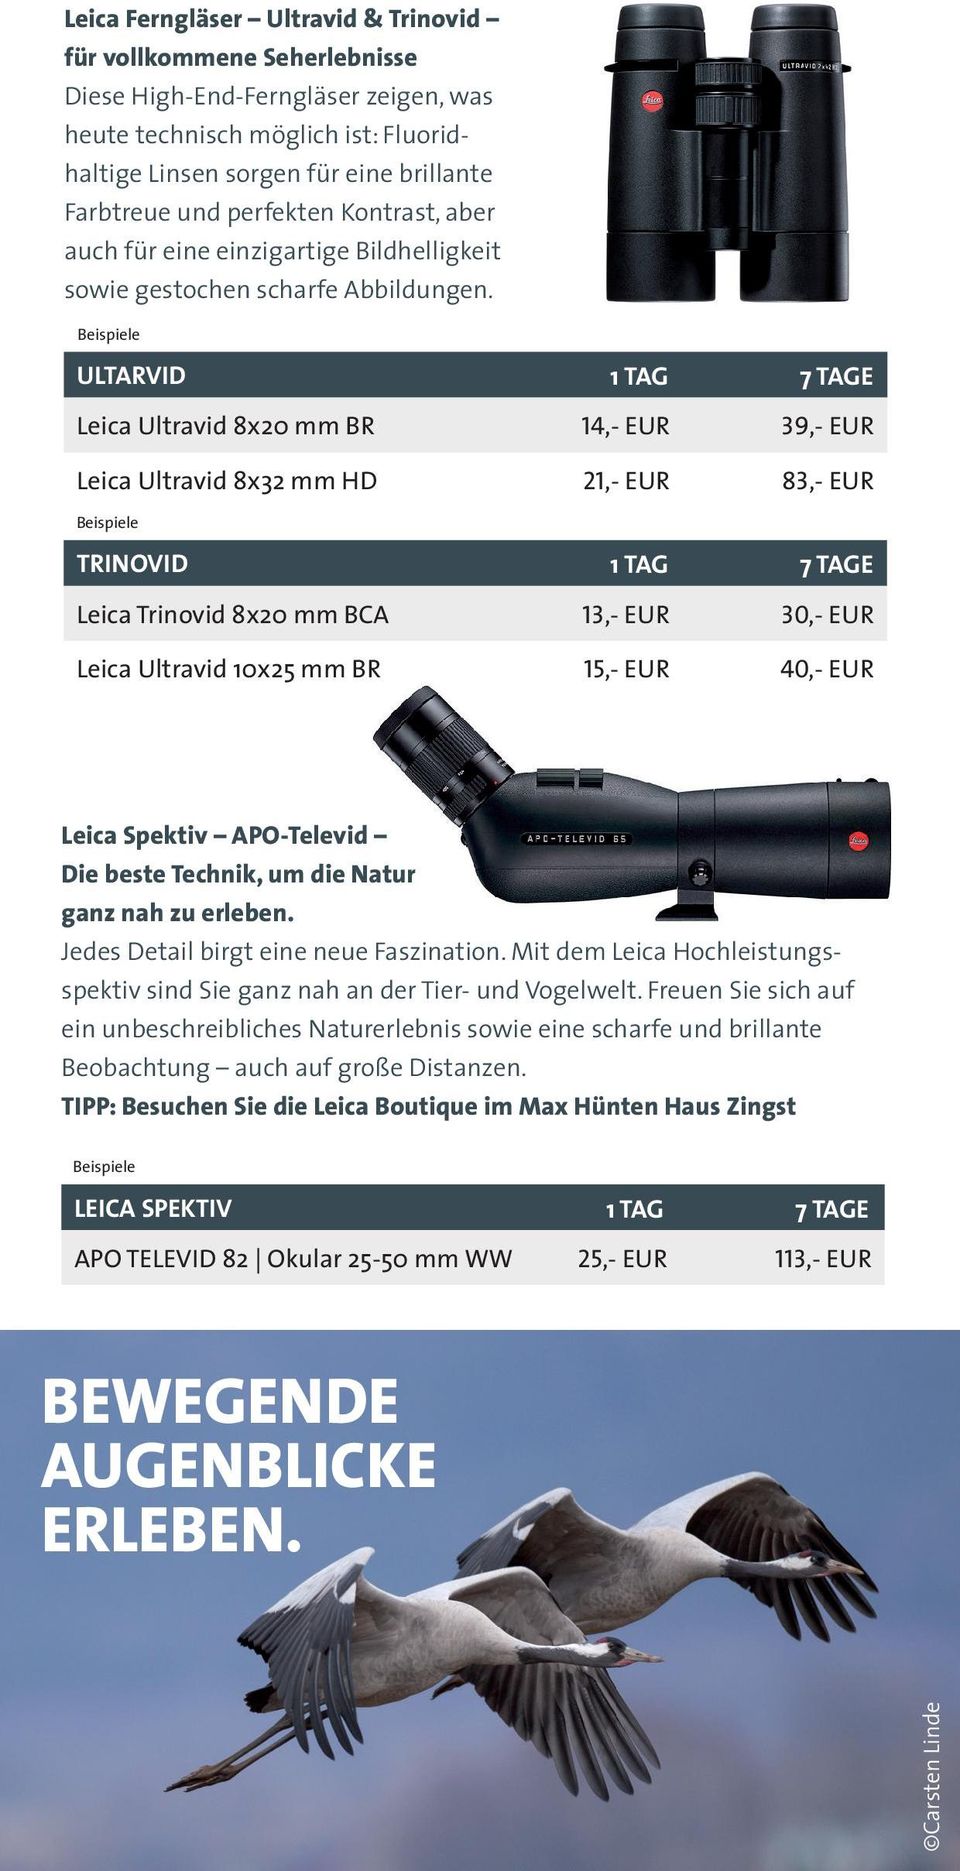 ULTARVID Leica Ultravid 8x20 mm BR 14,- EUR 39,- EUR Leica Ultravid 8x32 mm HD 21,- EUR 83,- EUR TRINOVID Leica Trinovid 8x20 mm BCA 13,- EUR 30,- EUR Leica Ultravid 10x25 mm BR 40,- EUR Catriona